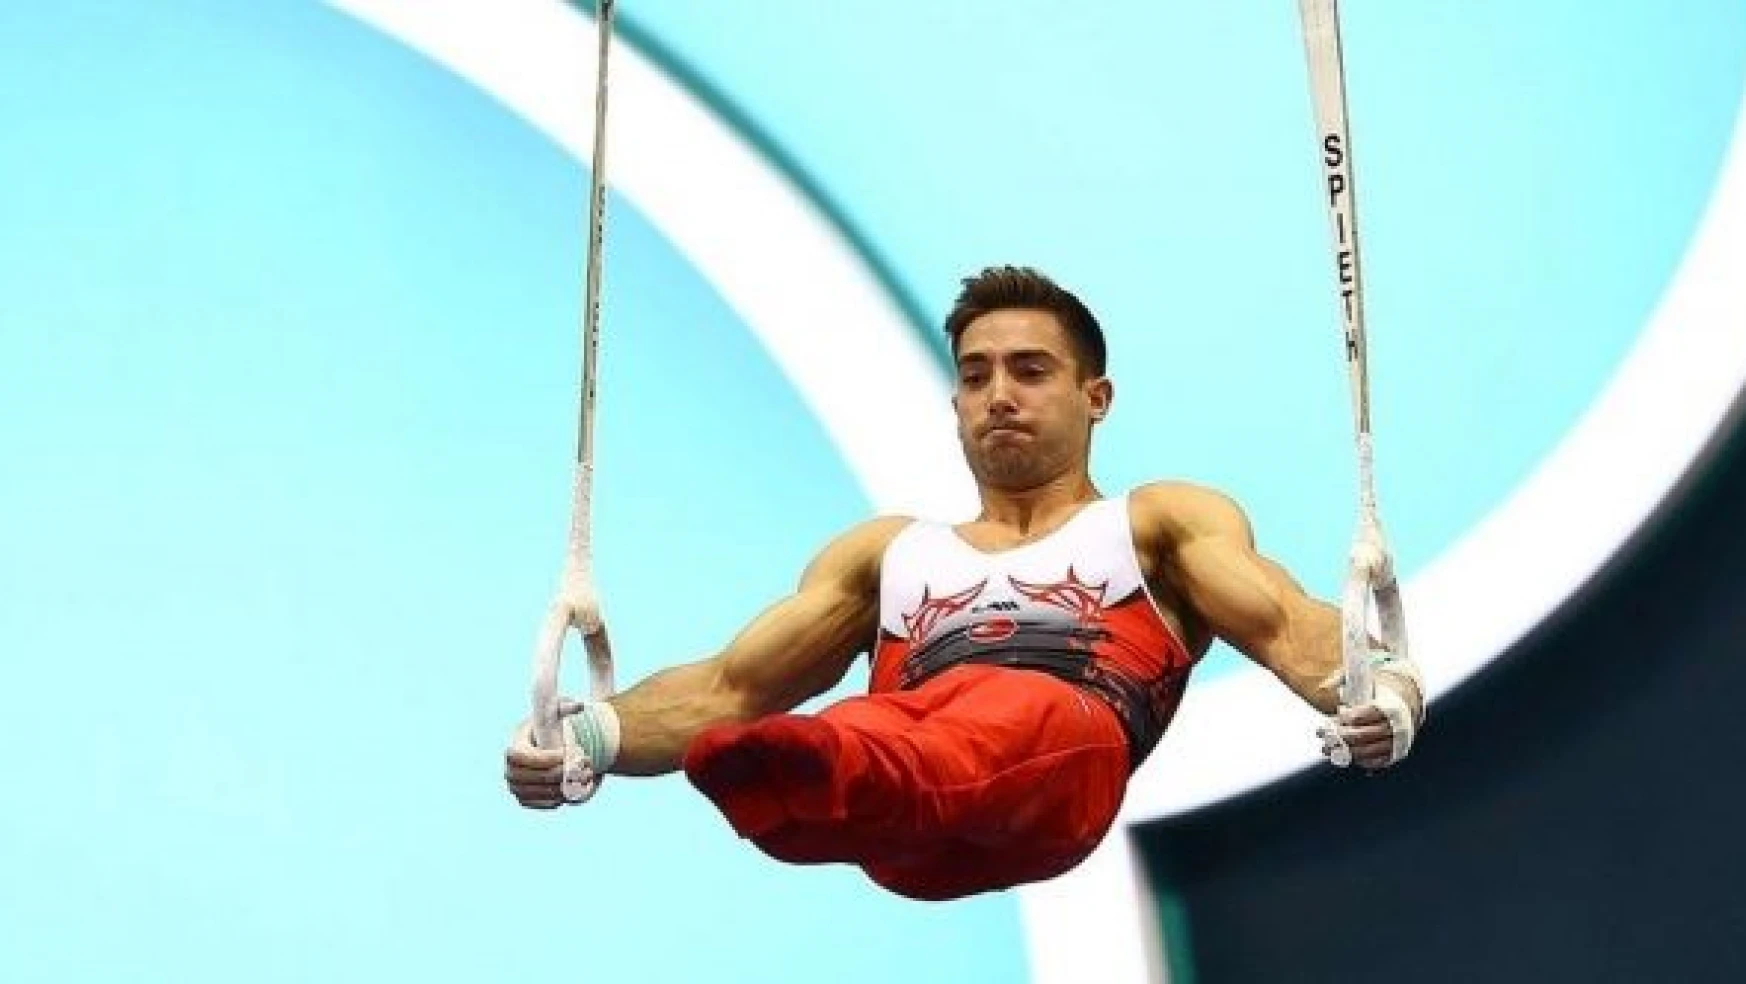 Milli cimnastikçi İbrahim Çolak Dünya Kupası'nda 2. oldu